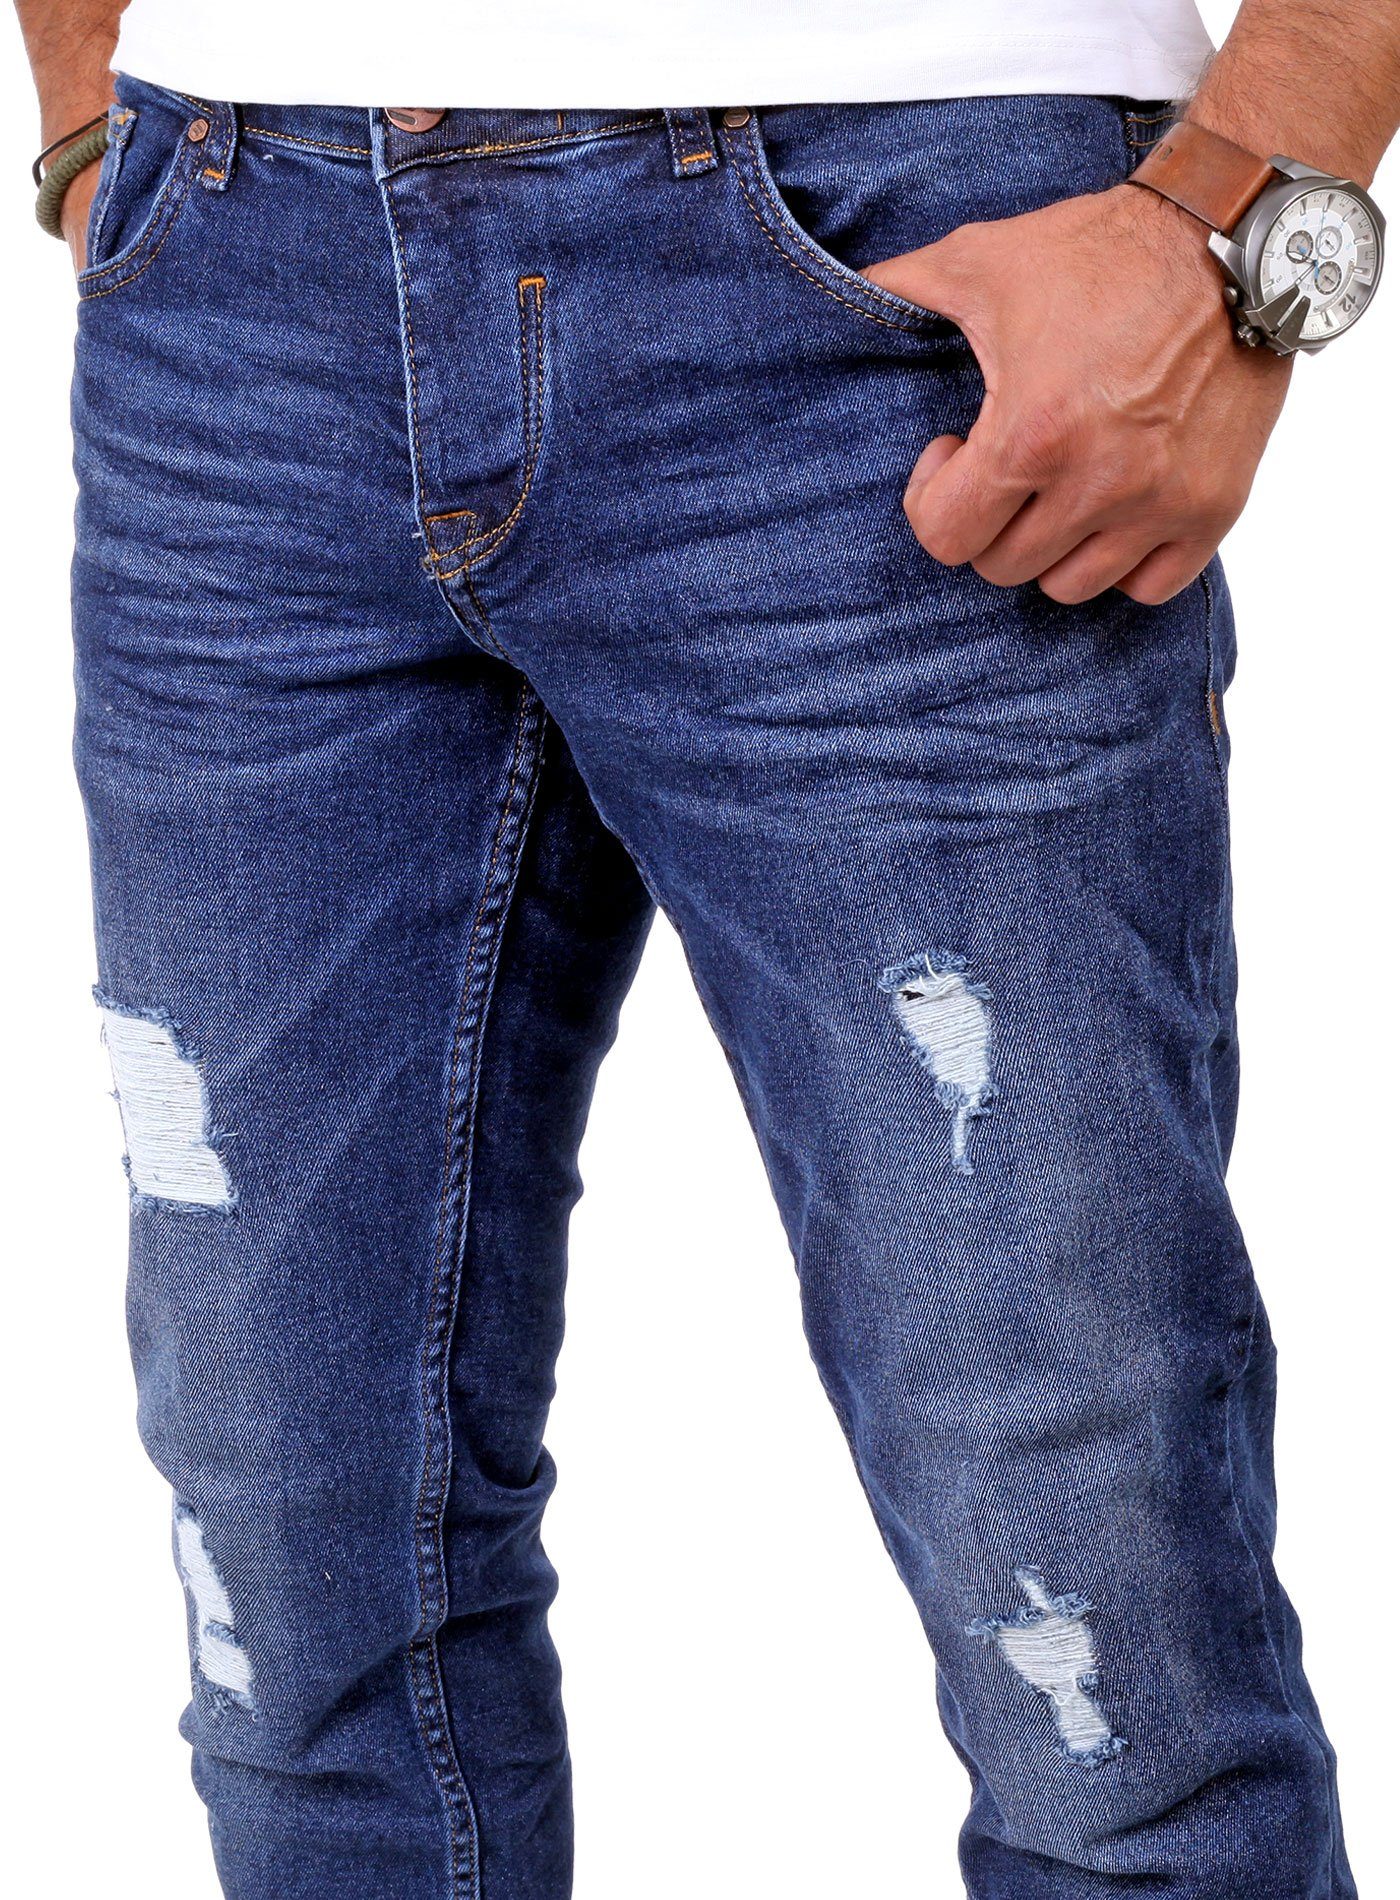 Destroyed Jeans-Hose Herren Destroyed-Jeans Slim Denim Jeans Look Fit Destroyed Look Stretch blau Reslad Slim Reslad Fit Jeans